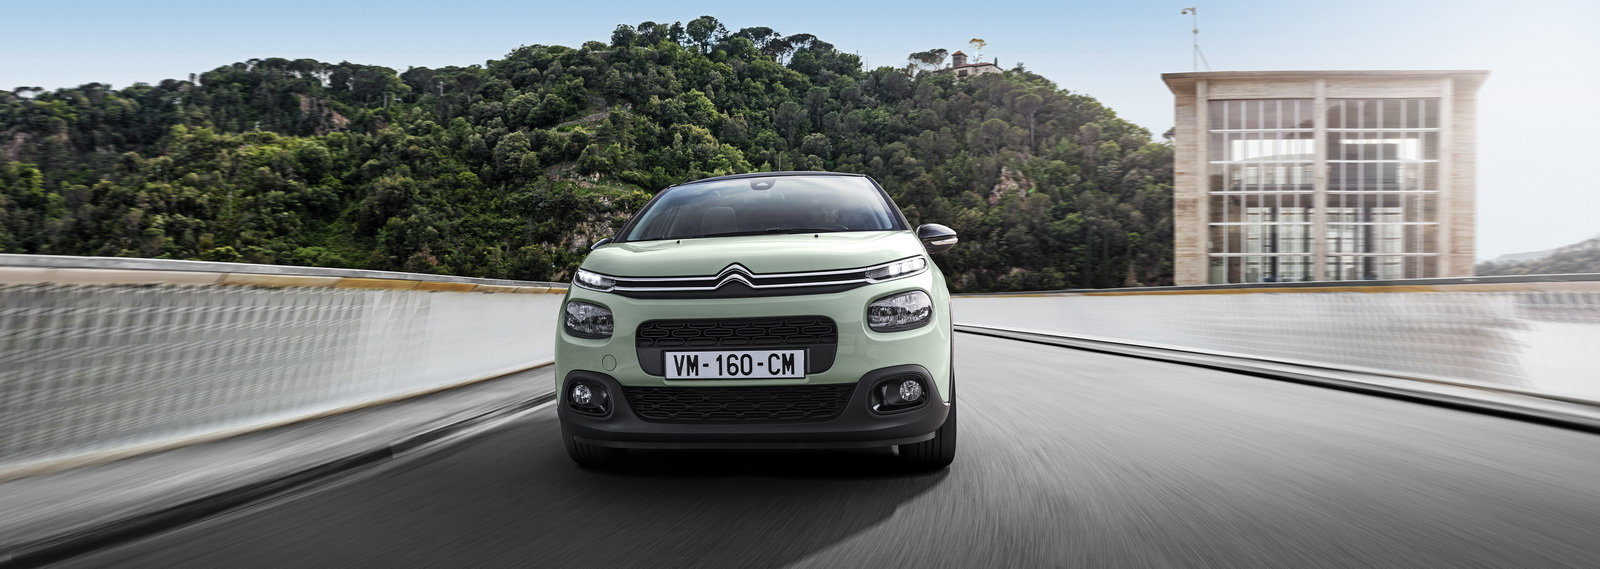 Nový Citroën C3 má mnoho prvků z C4 Cactus, jde o nejodvážnější vůz segmentu.